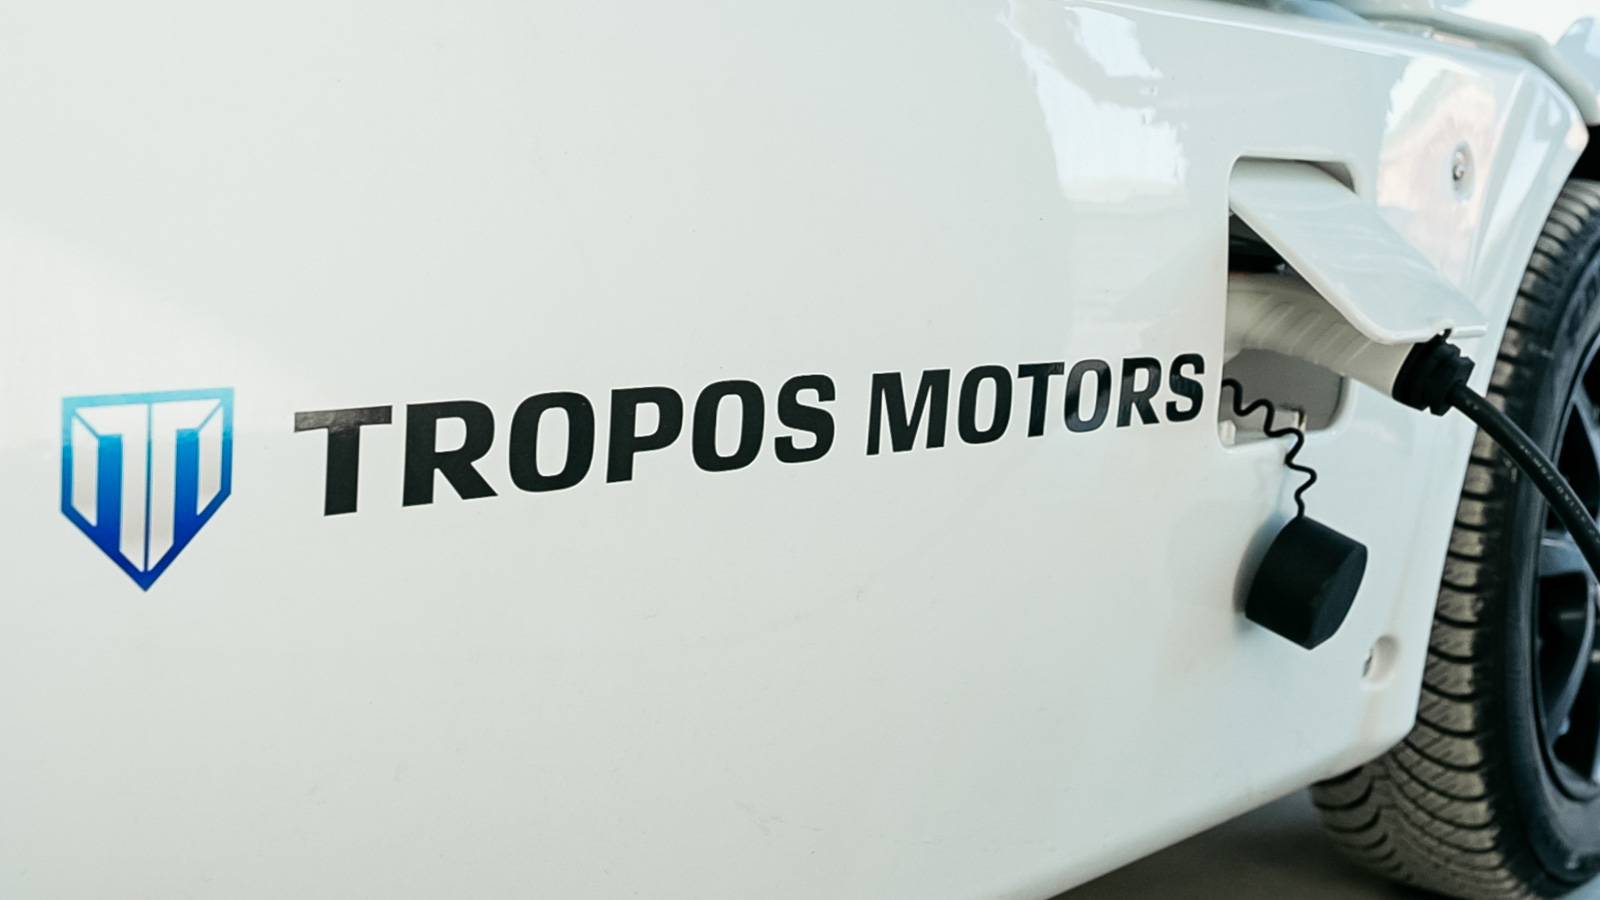 Budućnost je ovdje i zove se Tropos Motors